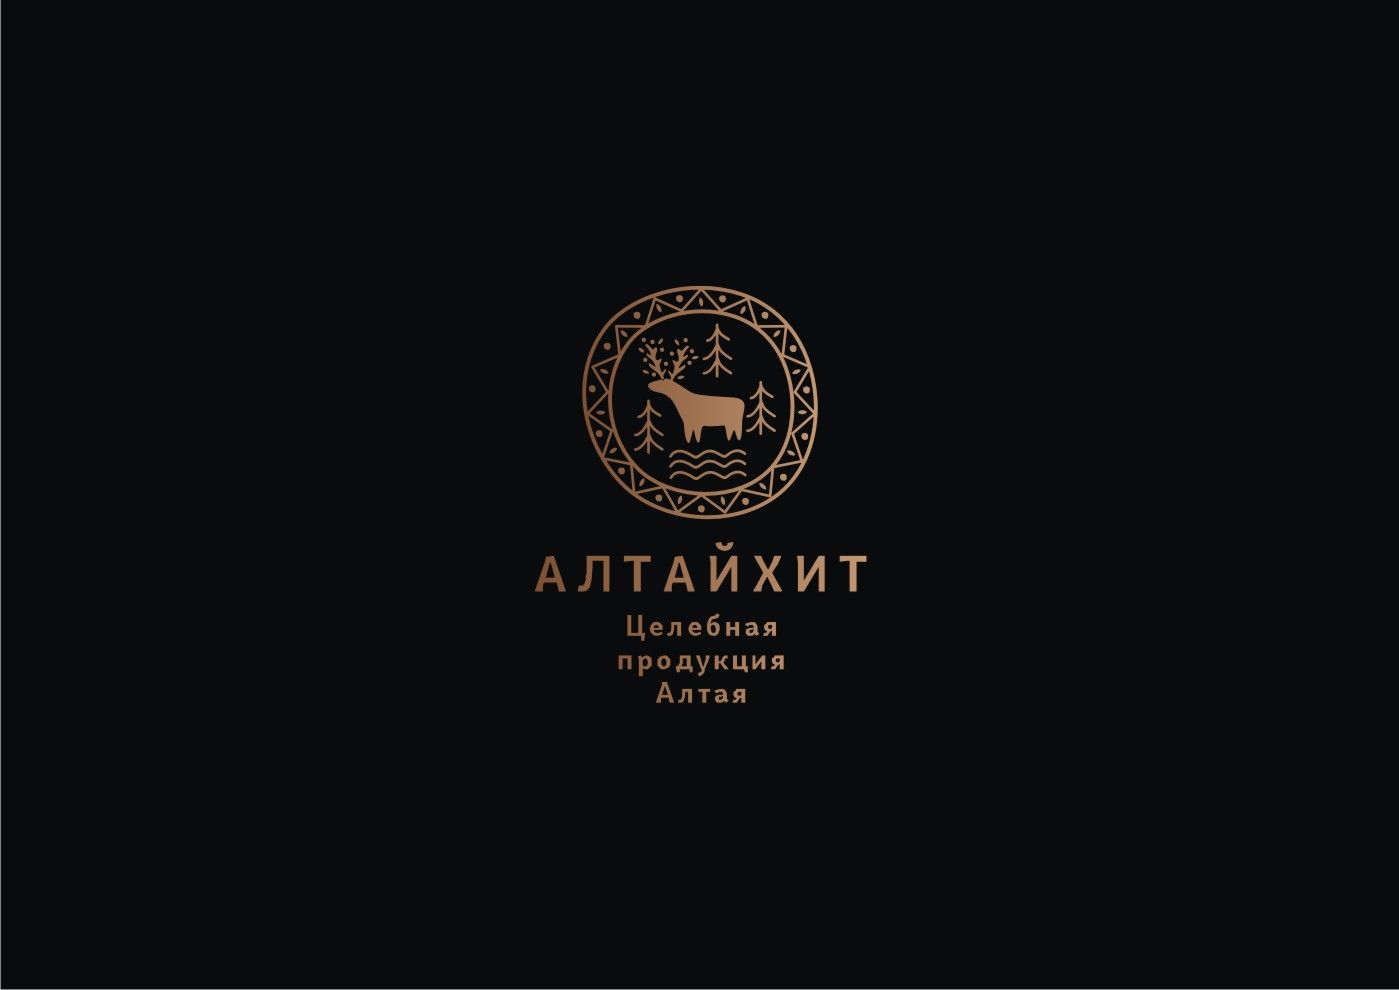 Логотип для АлтайХит - натуральная целебная продукция Алтая. - дизайнер degustyle